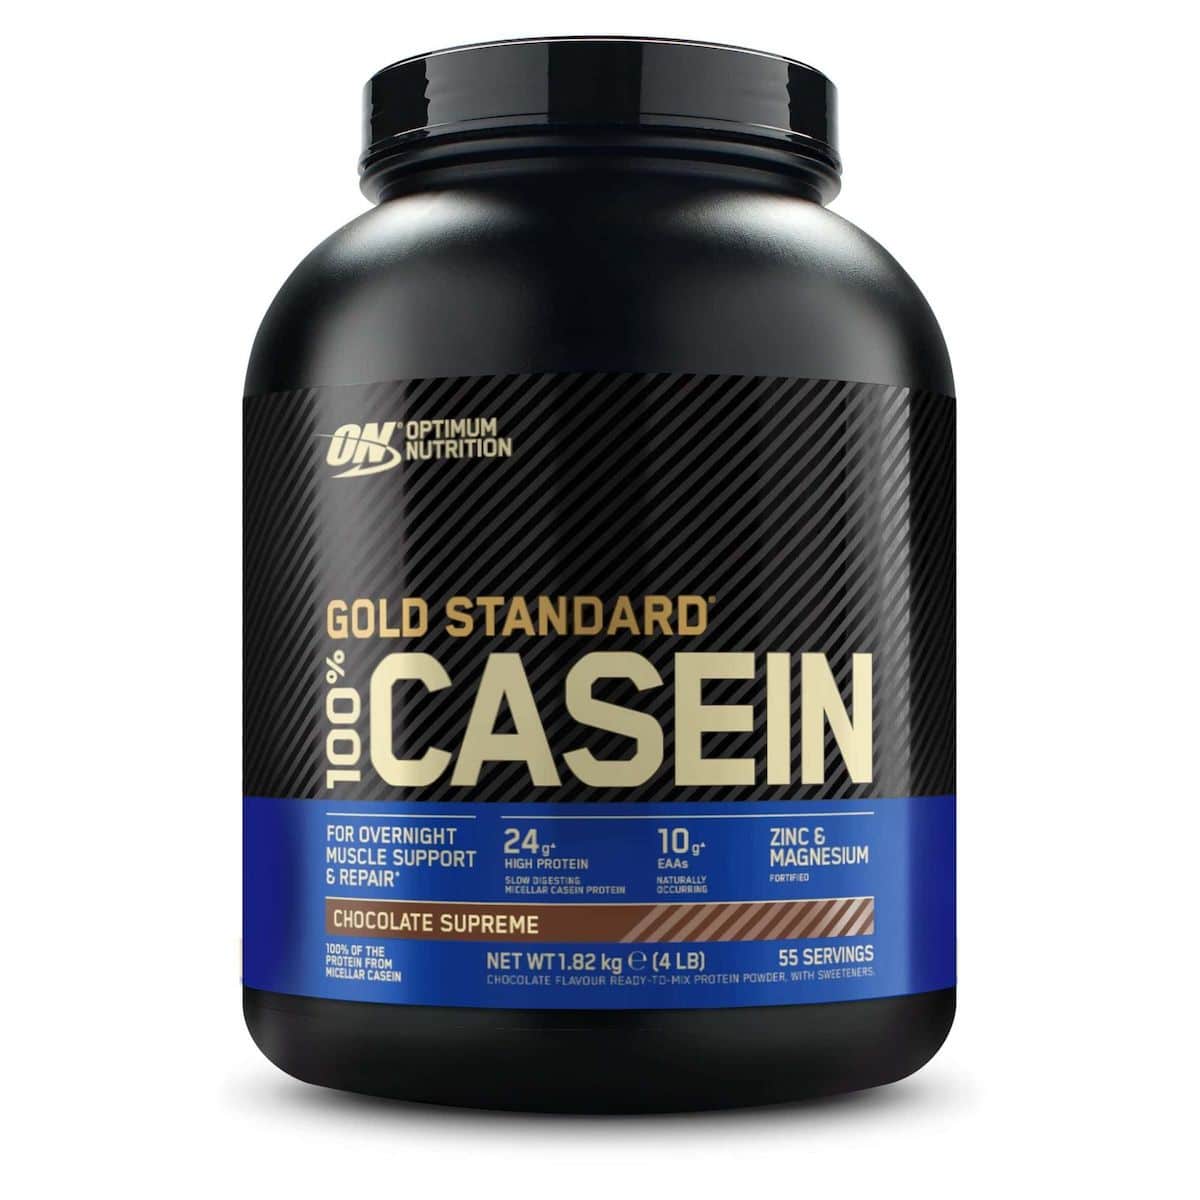 Gold Standard 100% Caseína 1.82kg Optimum Nutrition | Vainilla  MKP